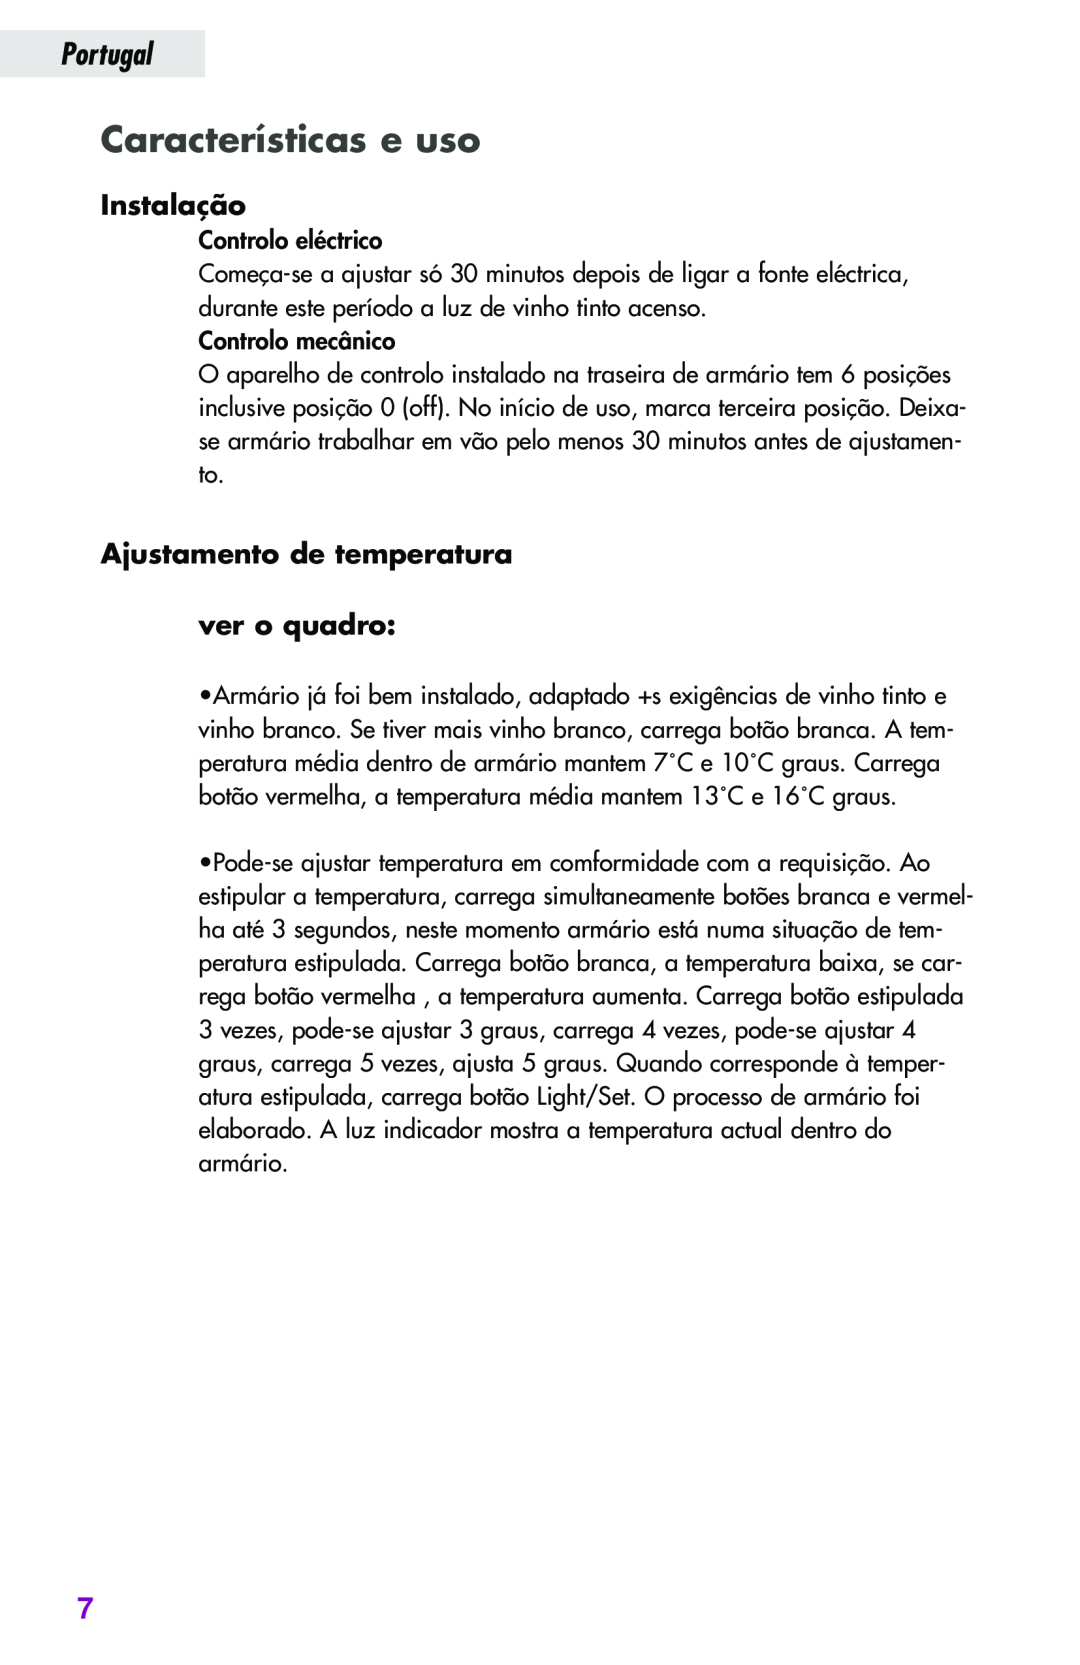 Haier JC-82GB manual Características e uso, Instalação, Ajustamento de temperatura ver o quadro, Portugal 